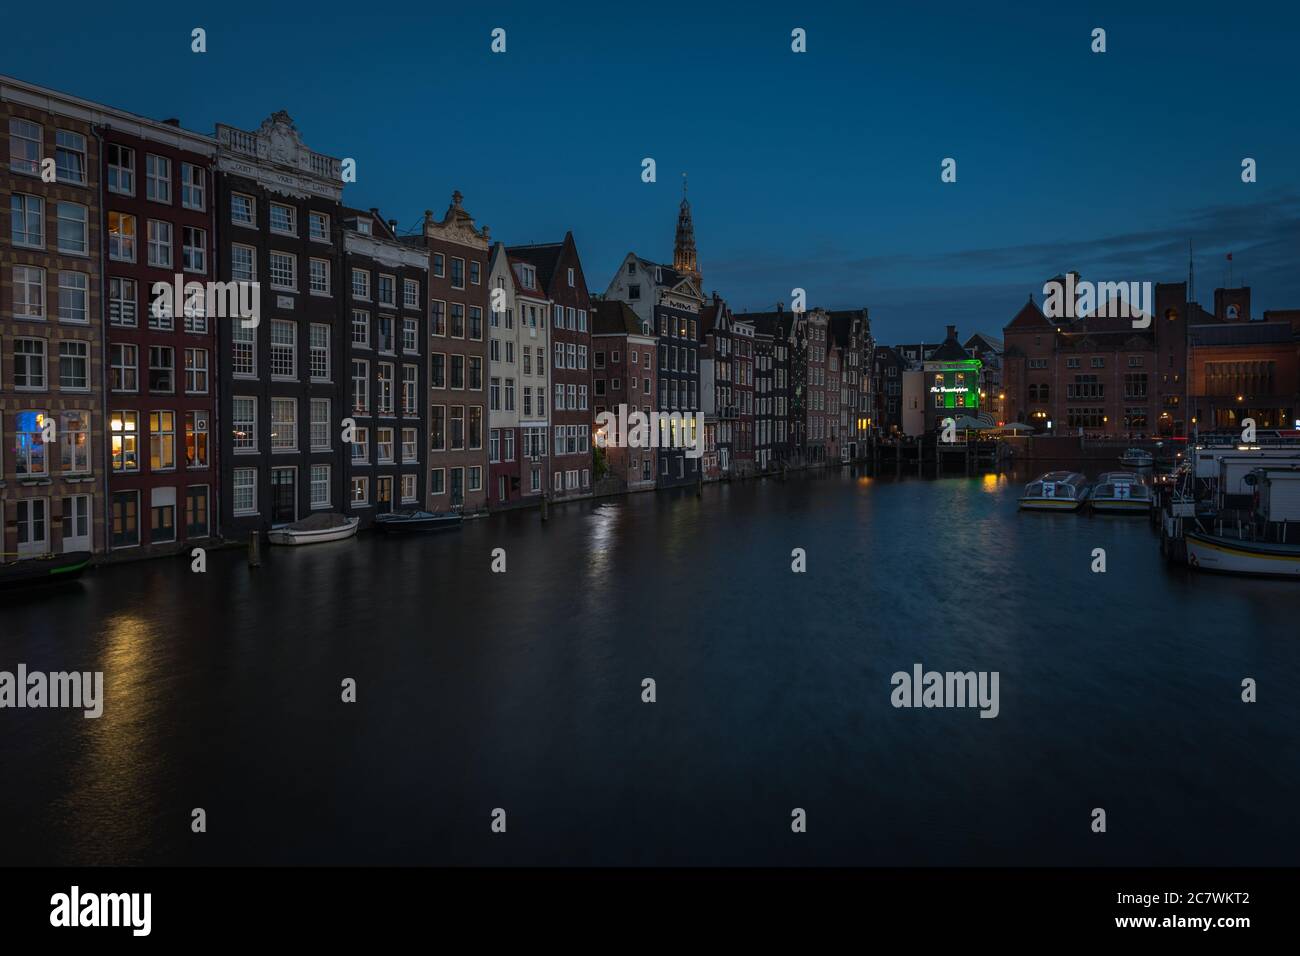 La notte comincia a cadere nei canali di Amsterdam, nei Paesi Bassi, nei Paesi Bassi Foto Stock